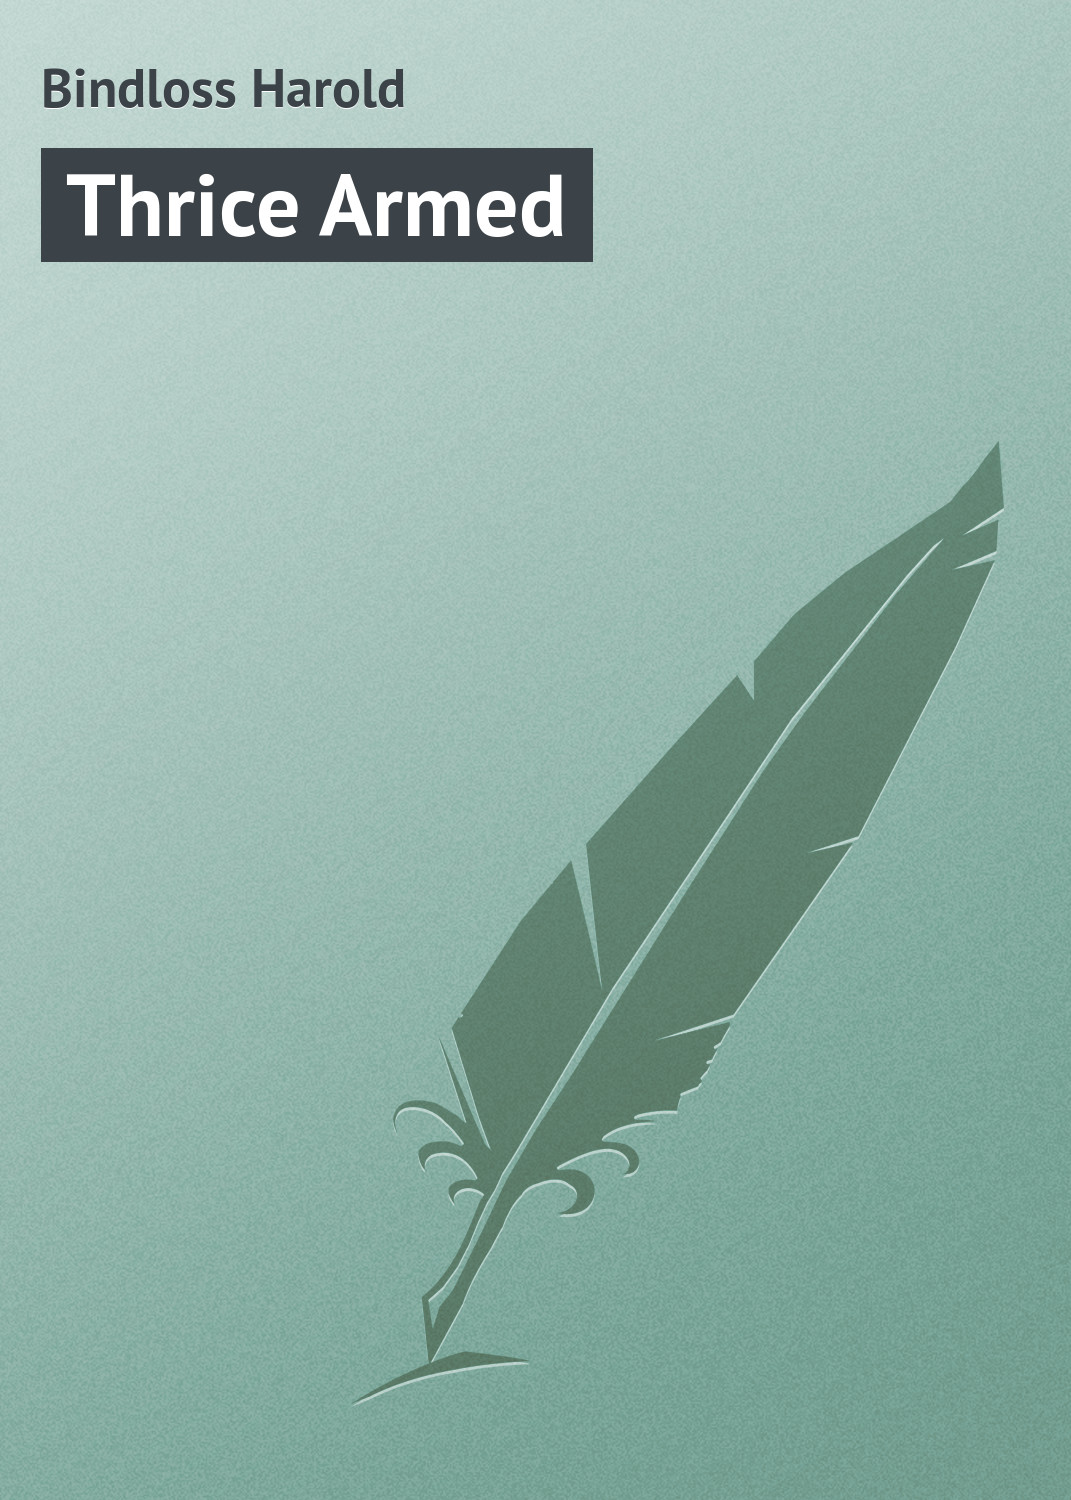 Книга Thrice Armed из серии , созданная Harold Bindloss, может относится к жанру Зарубежная классика. Стоимость электронной книги Thrice Armed с идентификатором 23170627 составляет 5.99 руб.